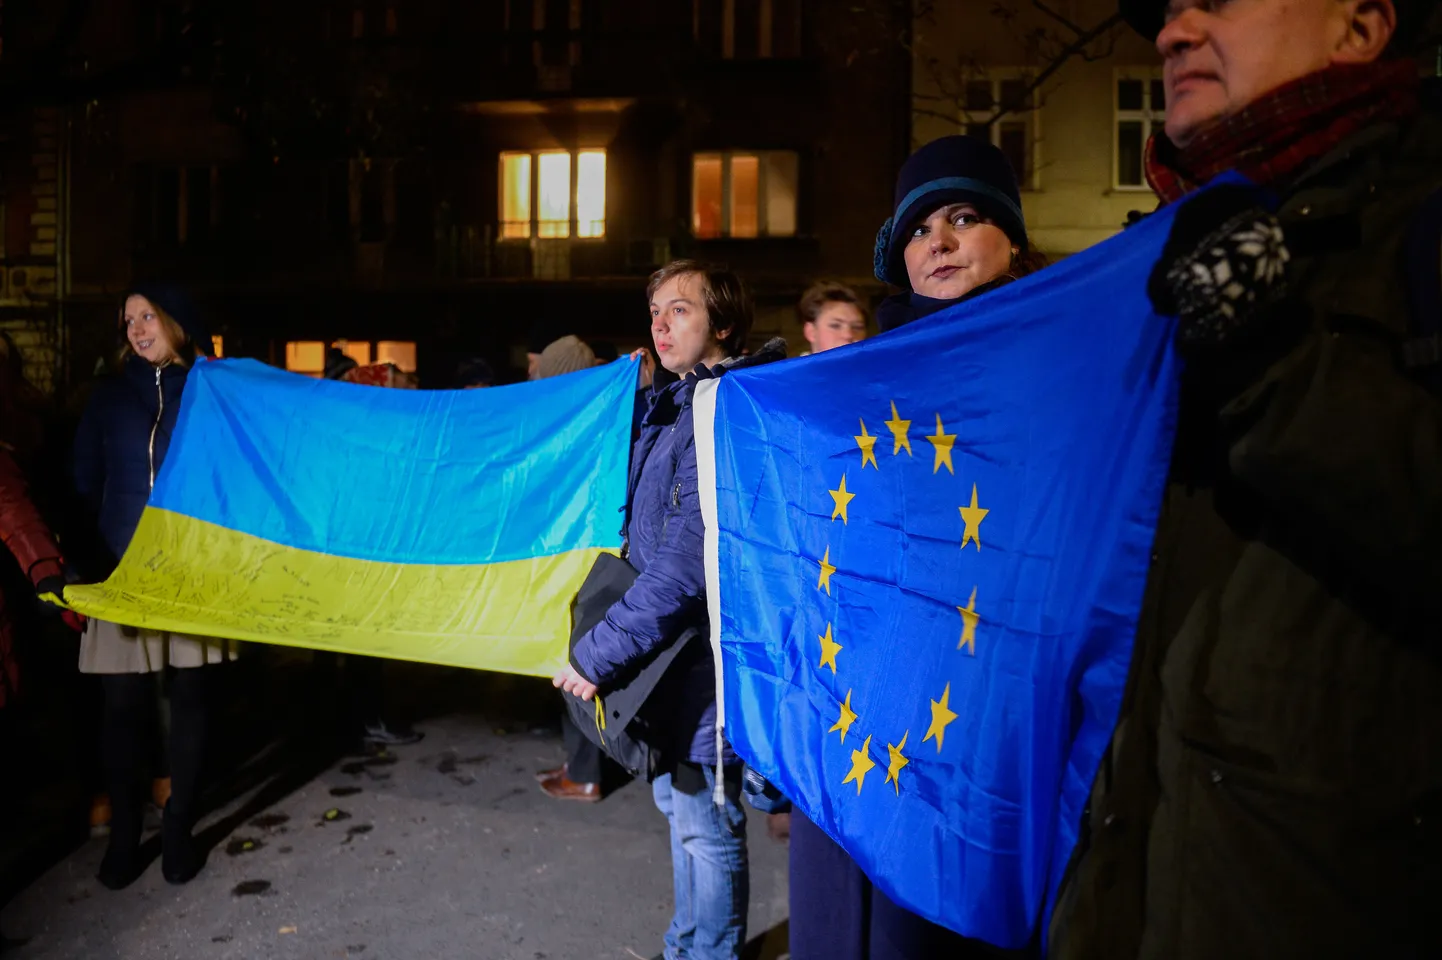 Флаги Украины и ЕС.